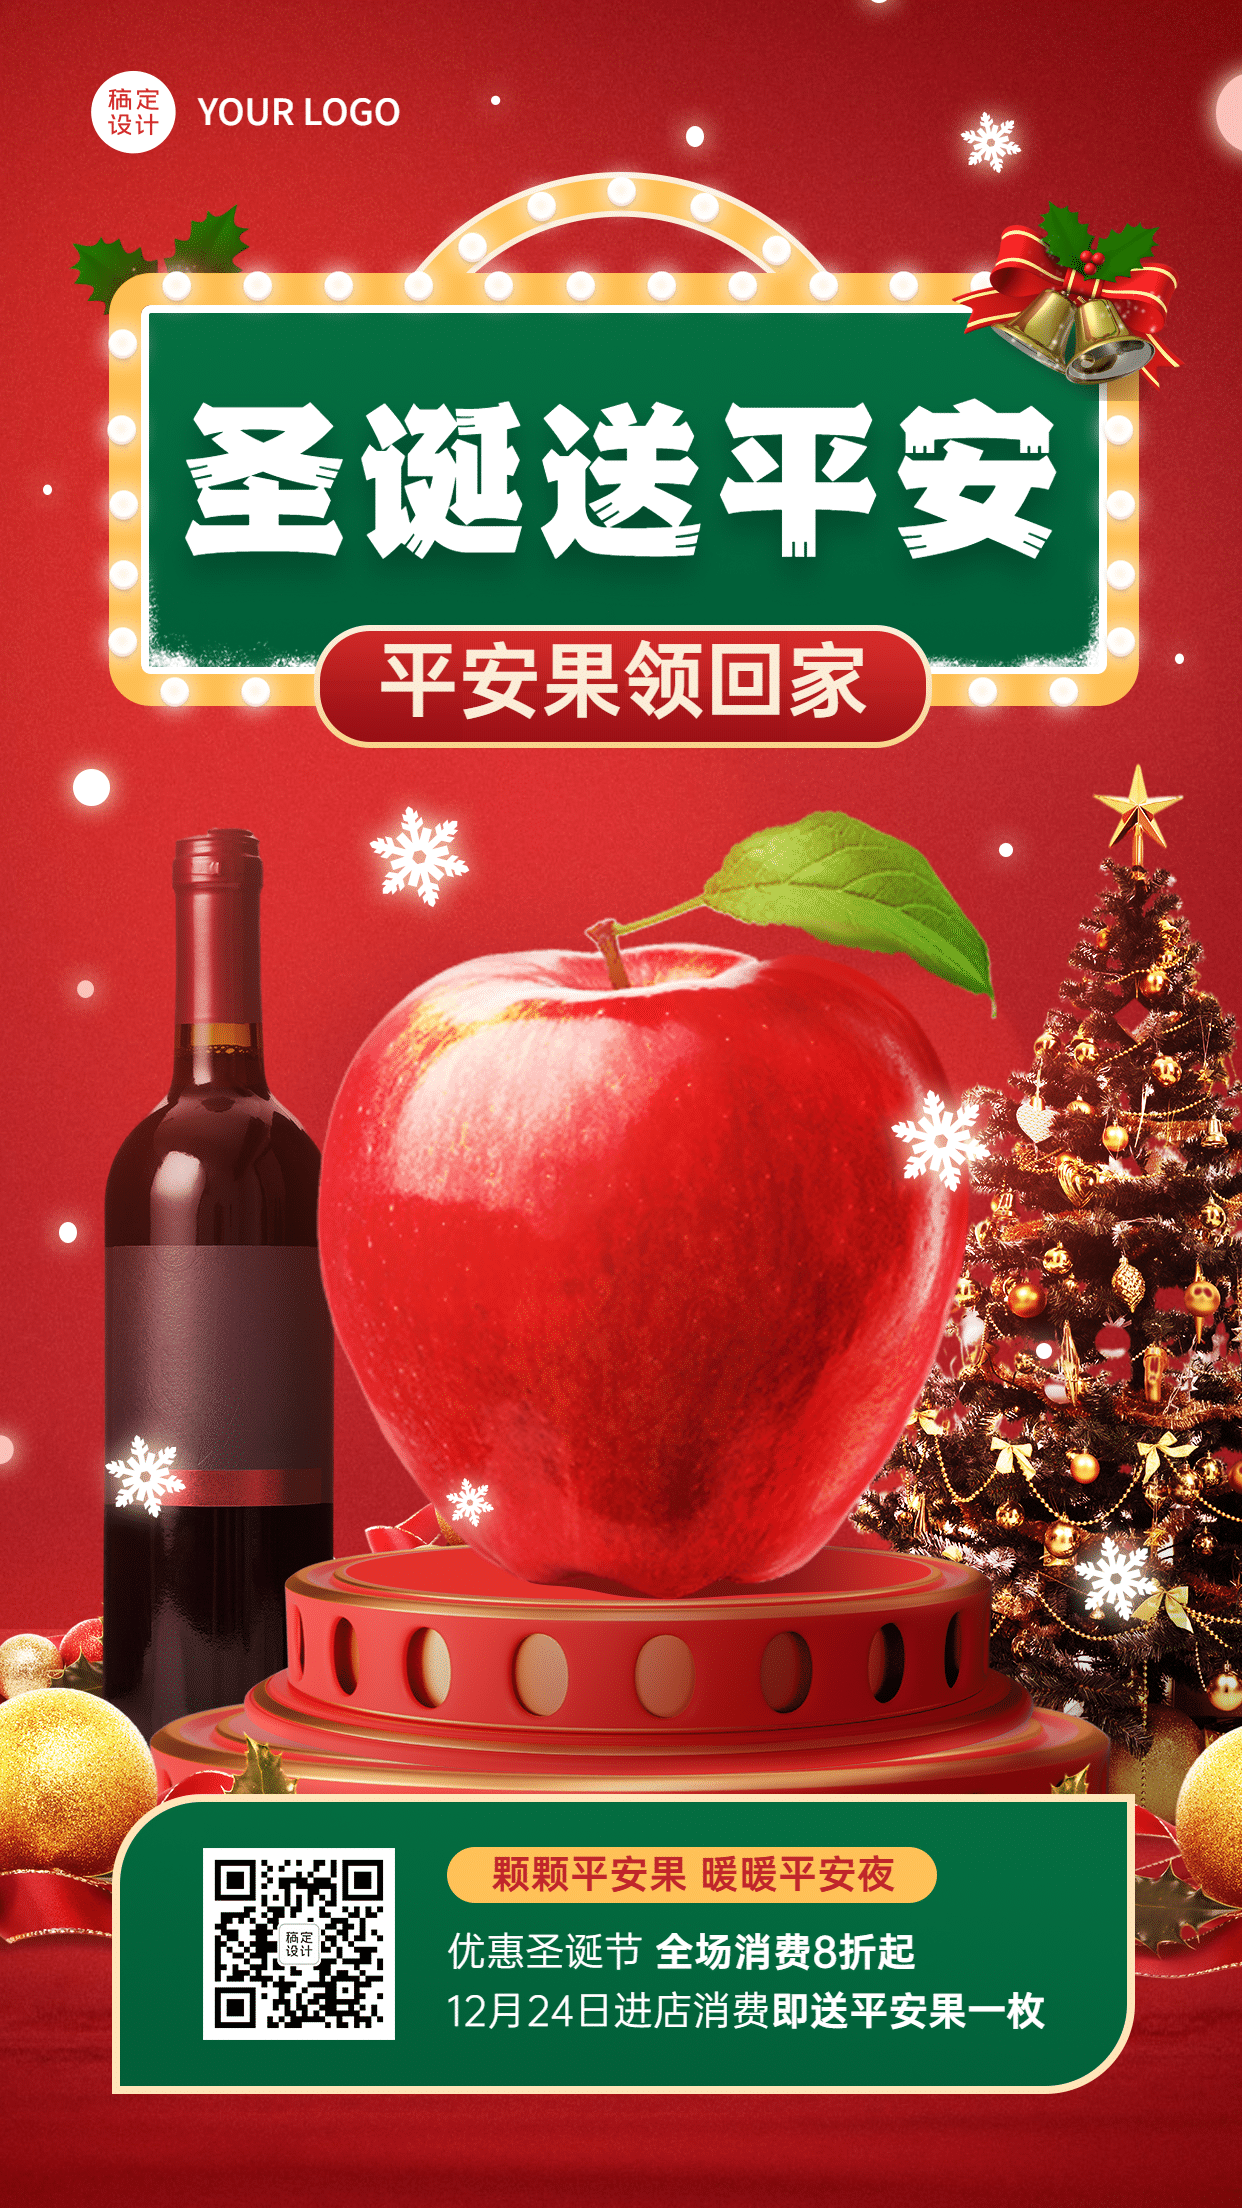 圣诞节餐饮业营销苹果酒瓶手机海报预览效果